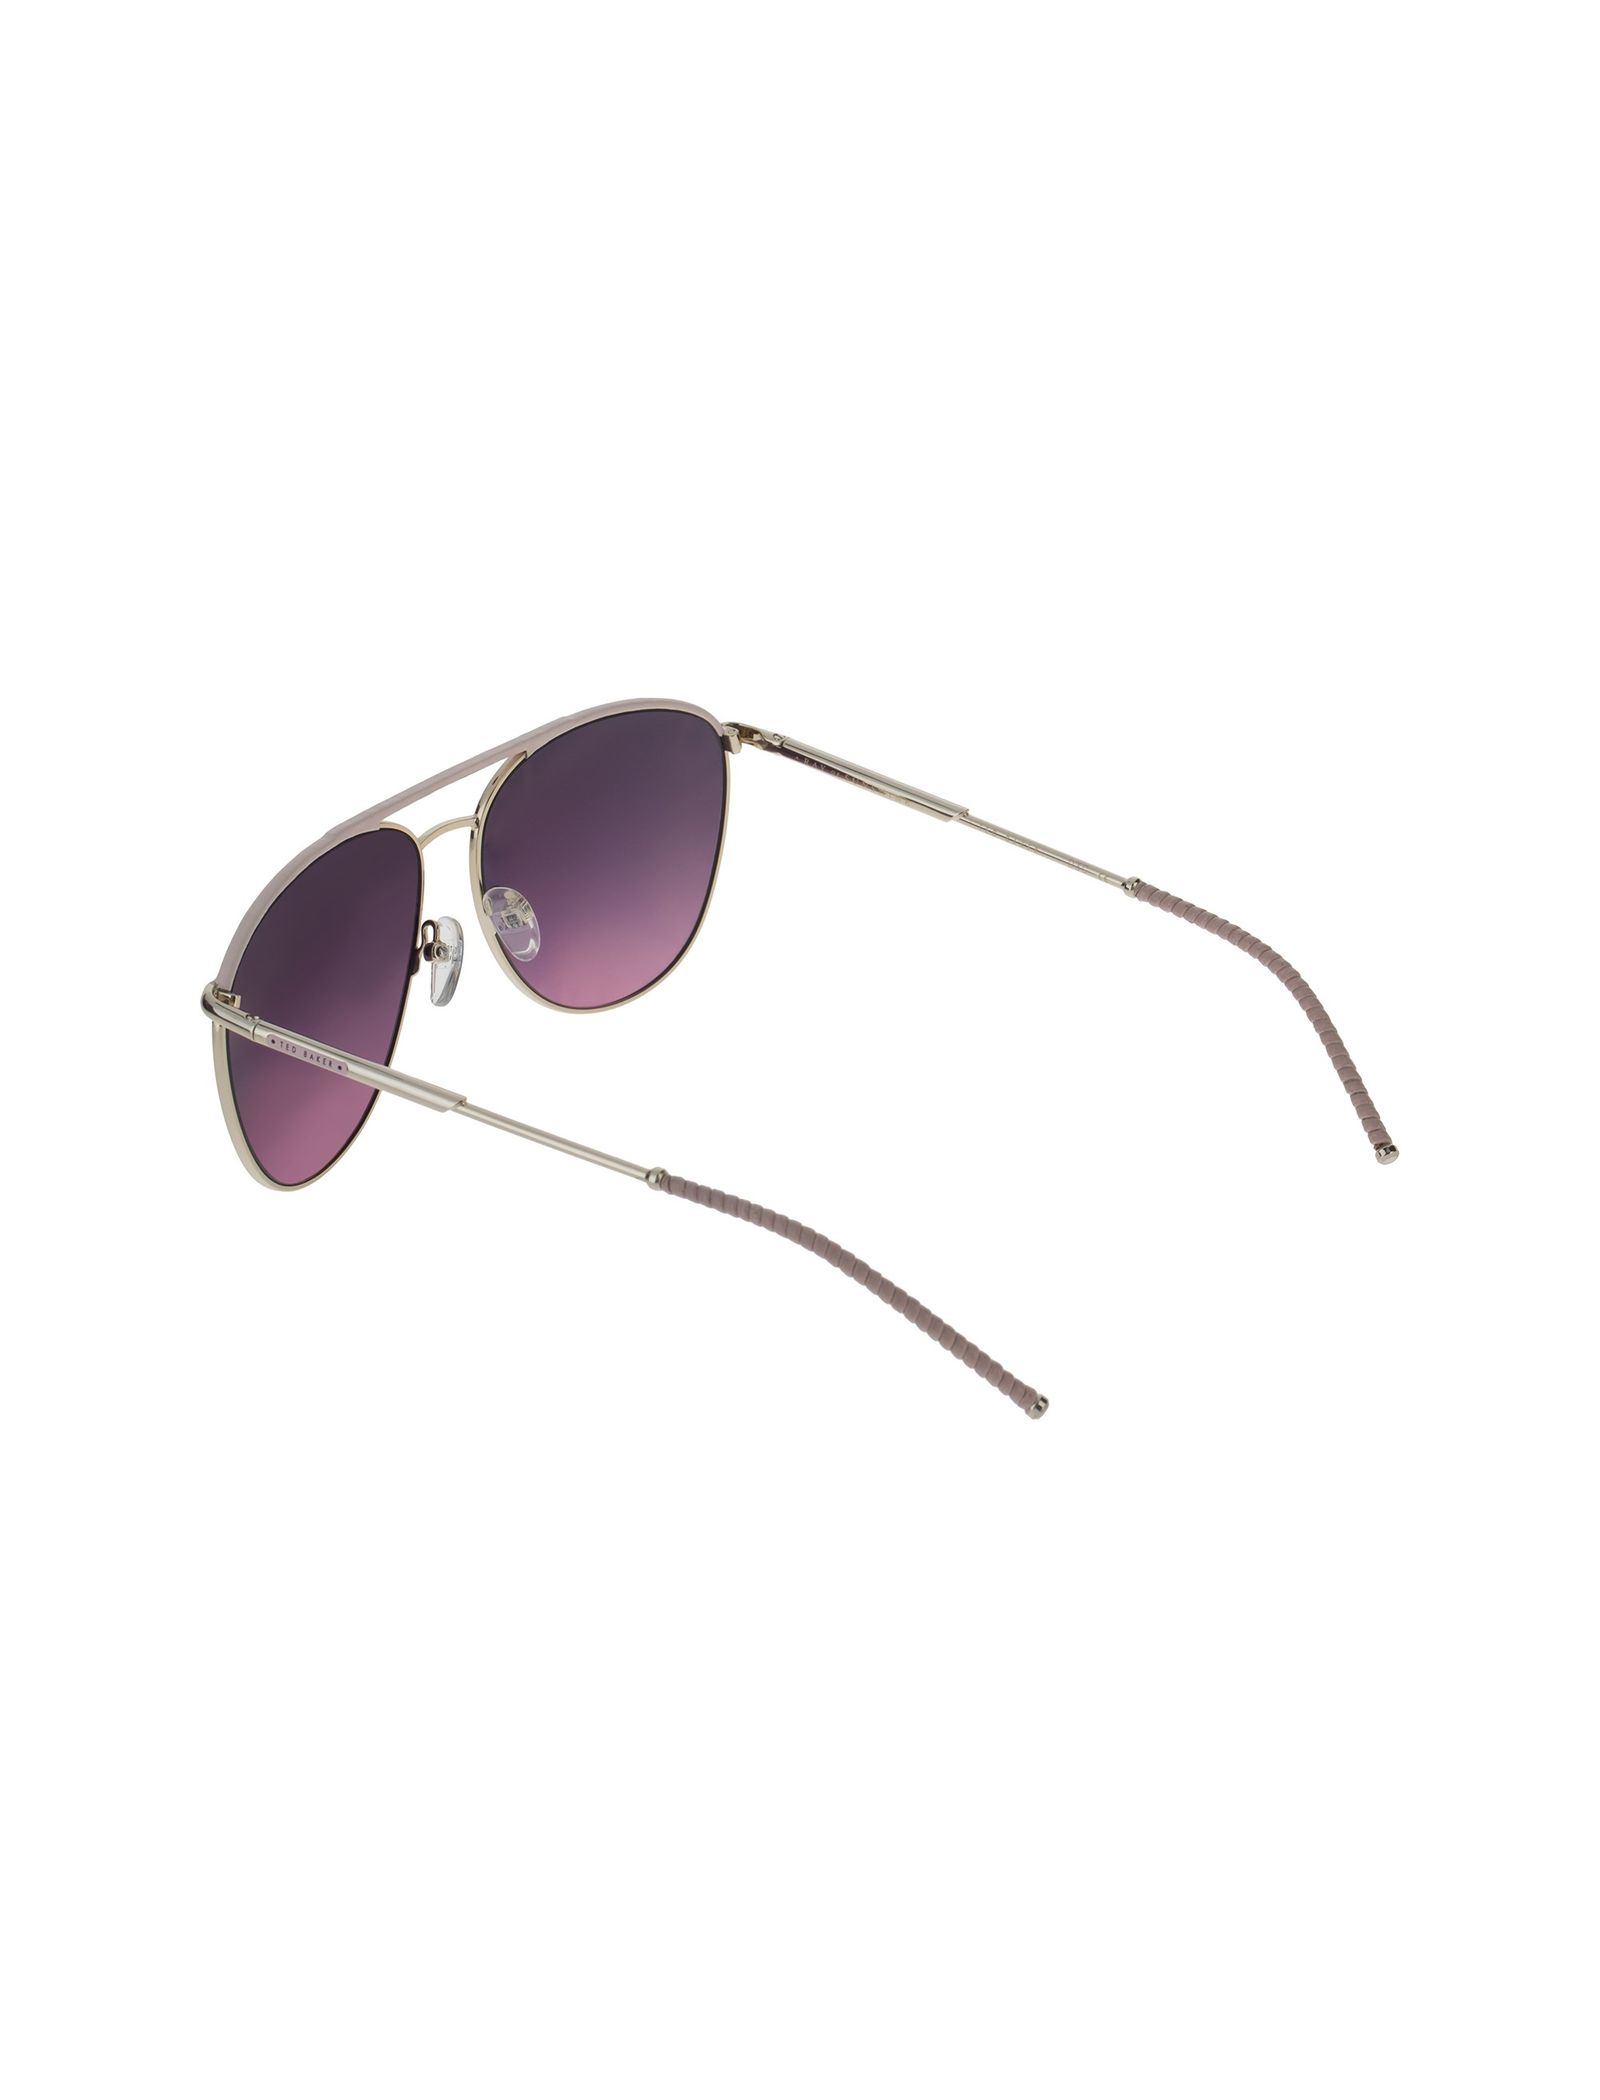 عینک آفتابی خلبانی زنانه - تد بیکر - طلايي و صورتي - 5